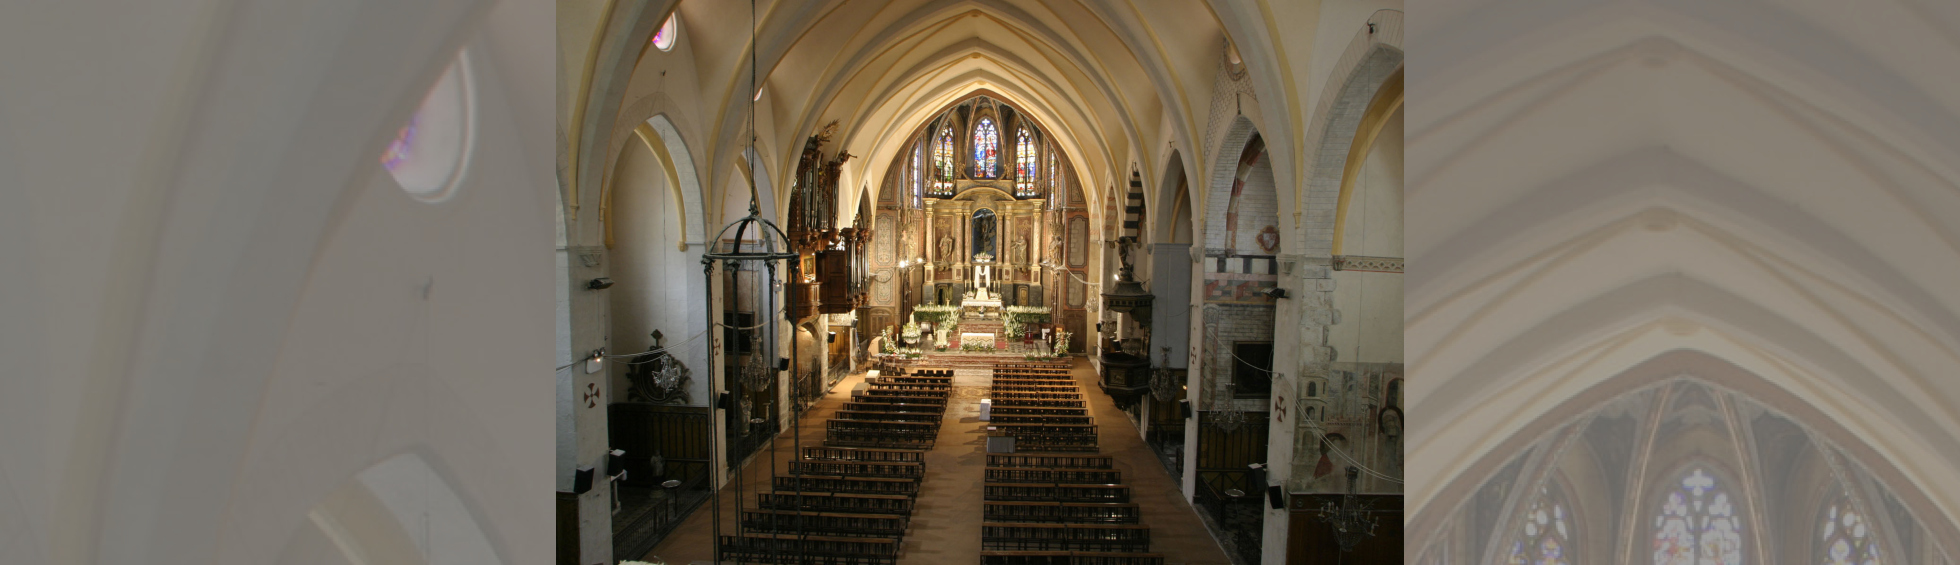 L'église Notre-Dame de la Réal à une nef et chapelles latérales 